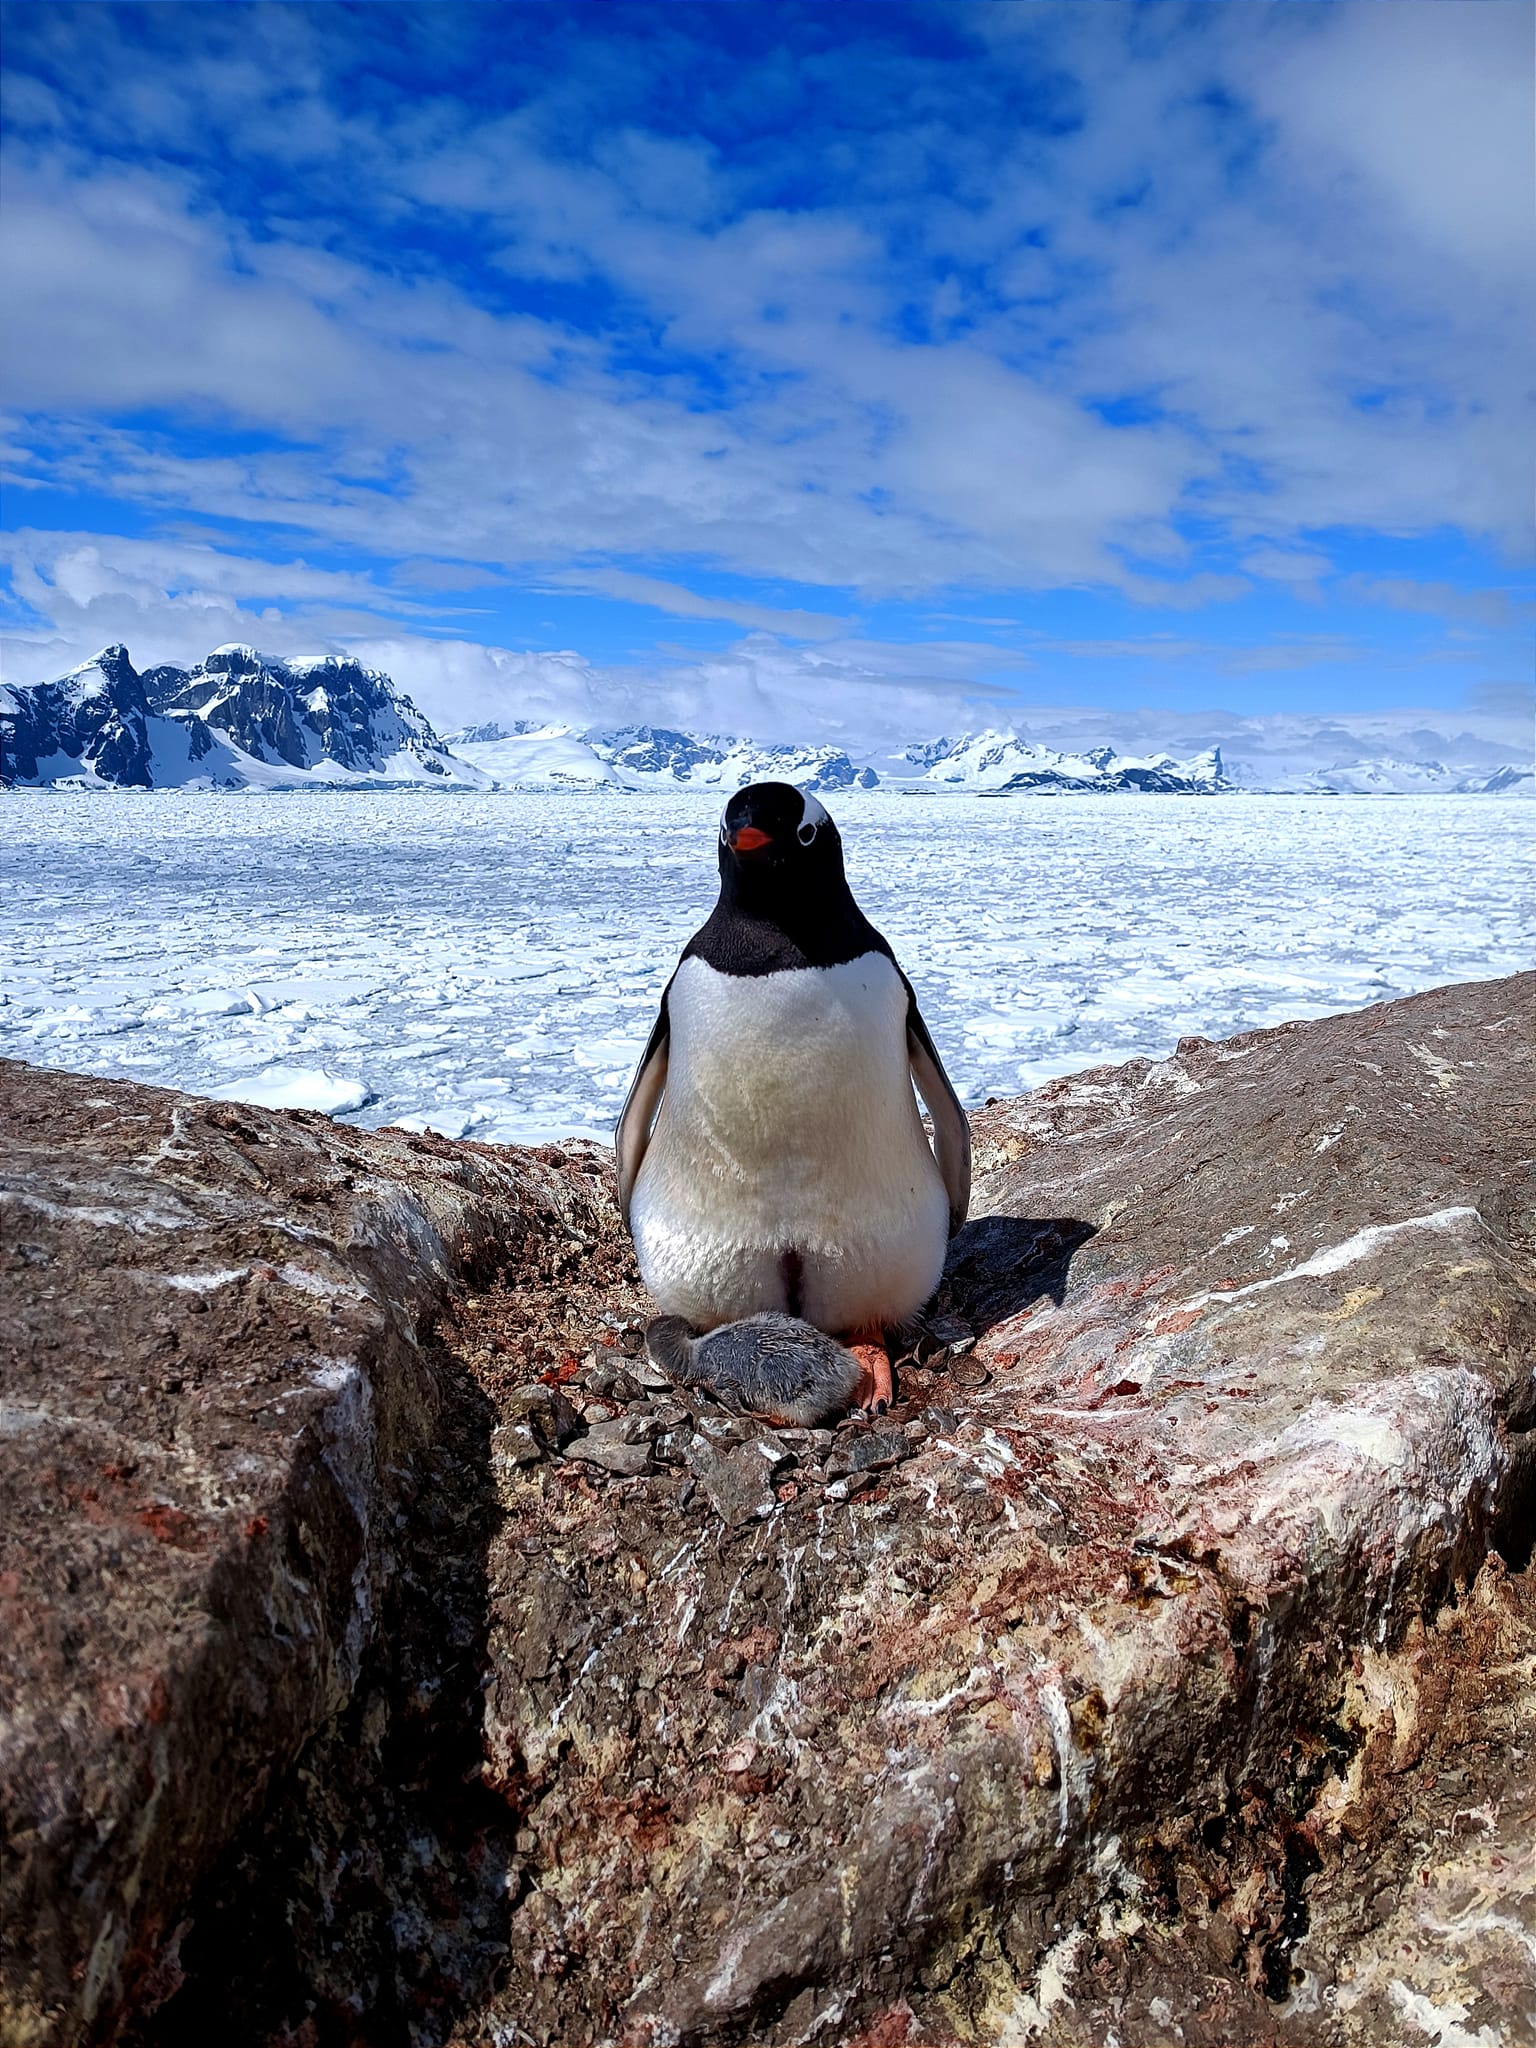 Фото: Марта Дзиндра и Сергей Глотов/facebook.com/AntarcticCenter